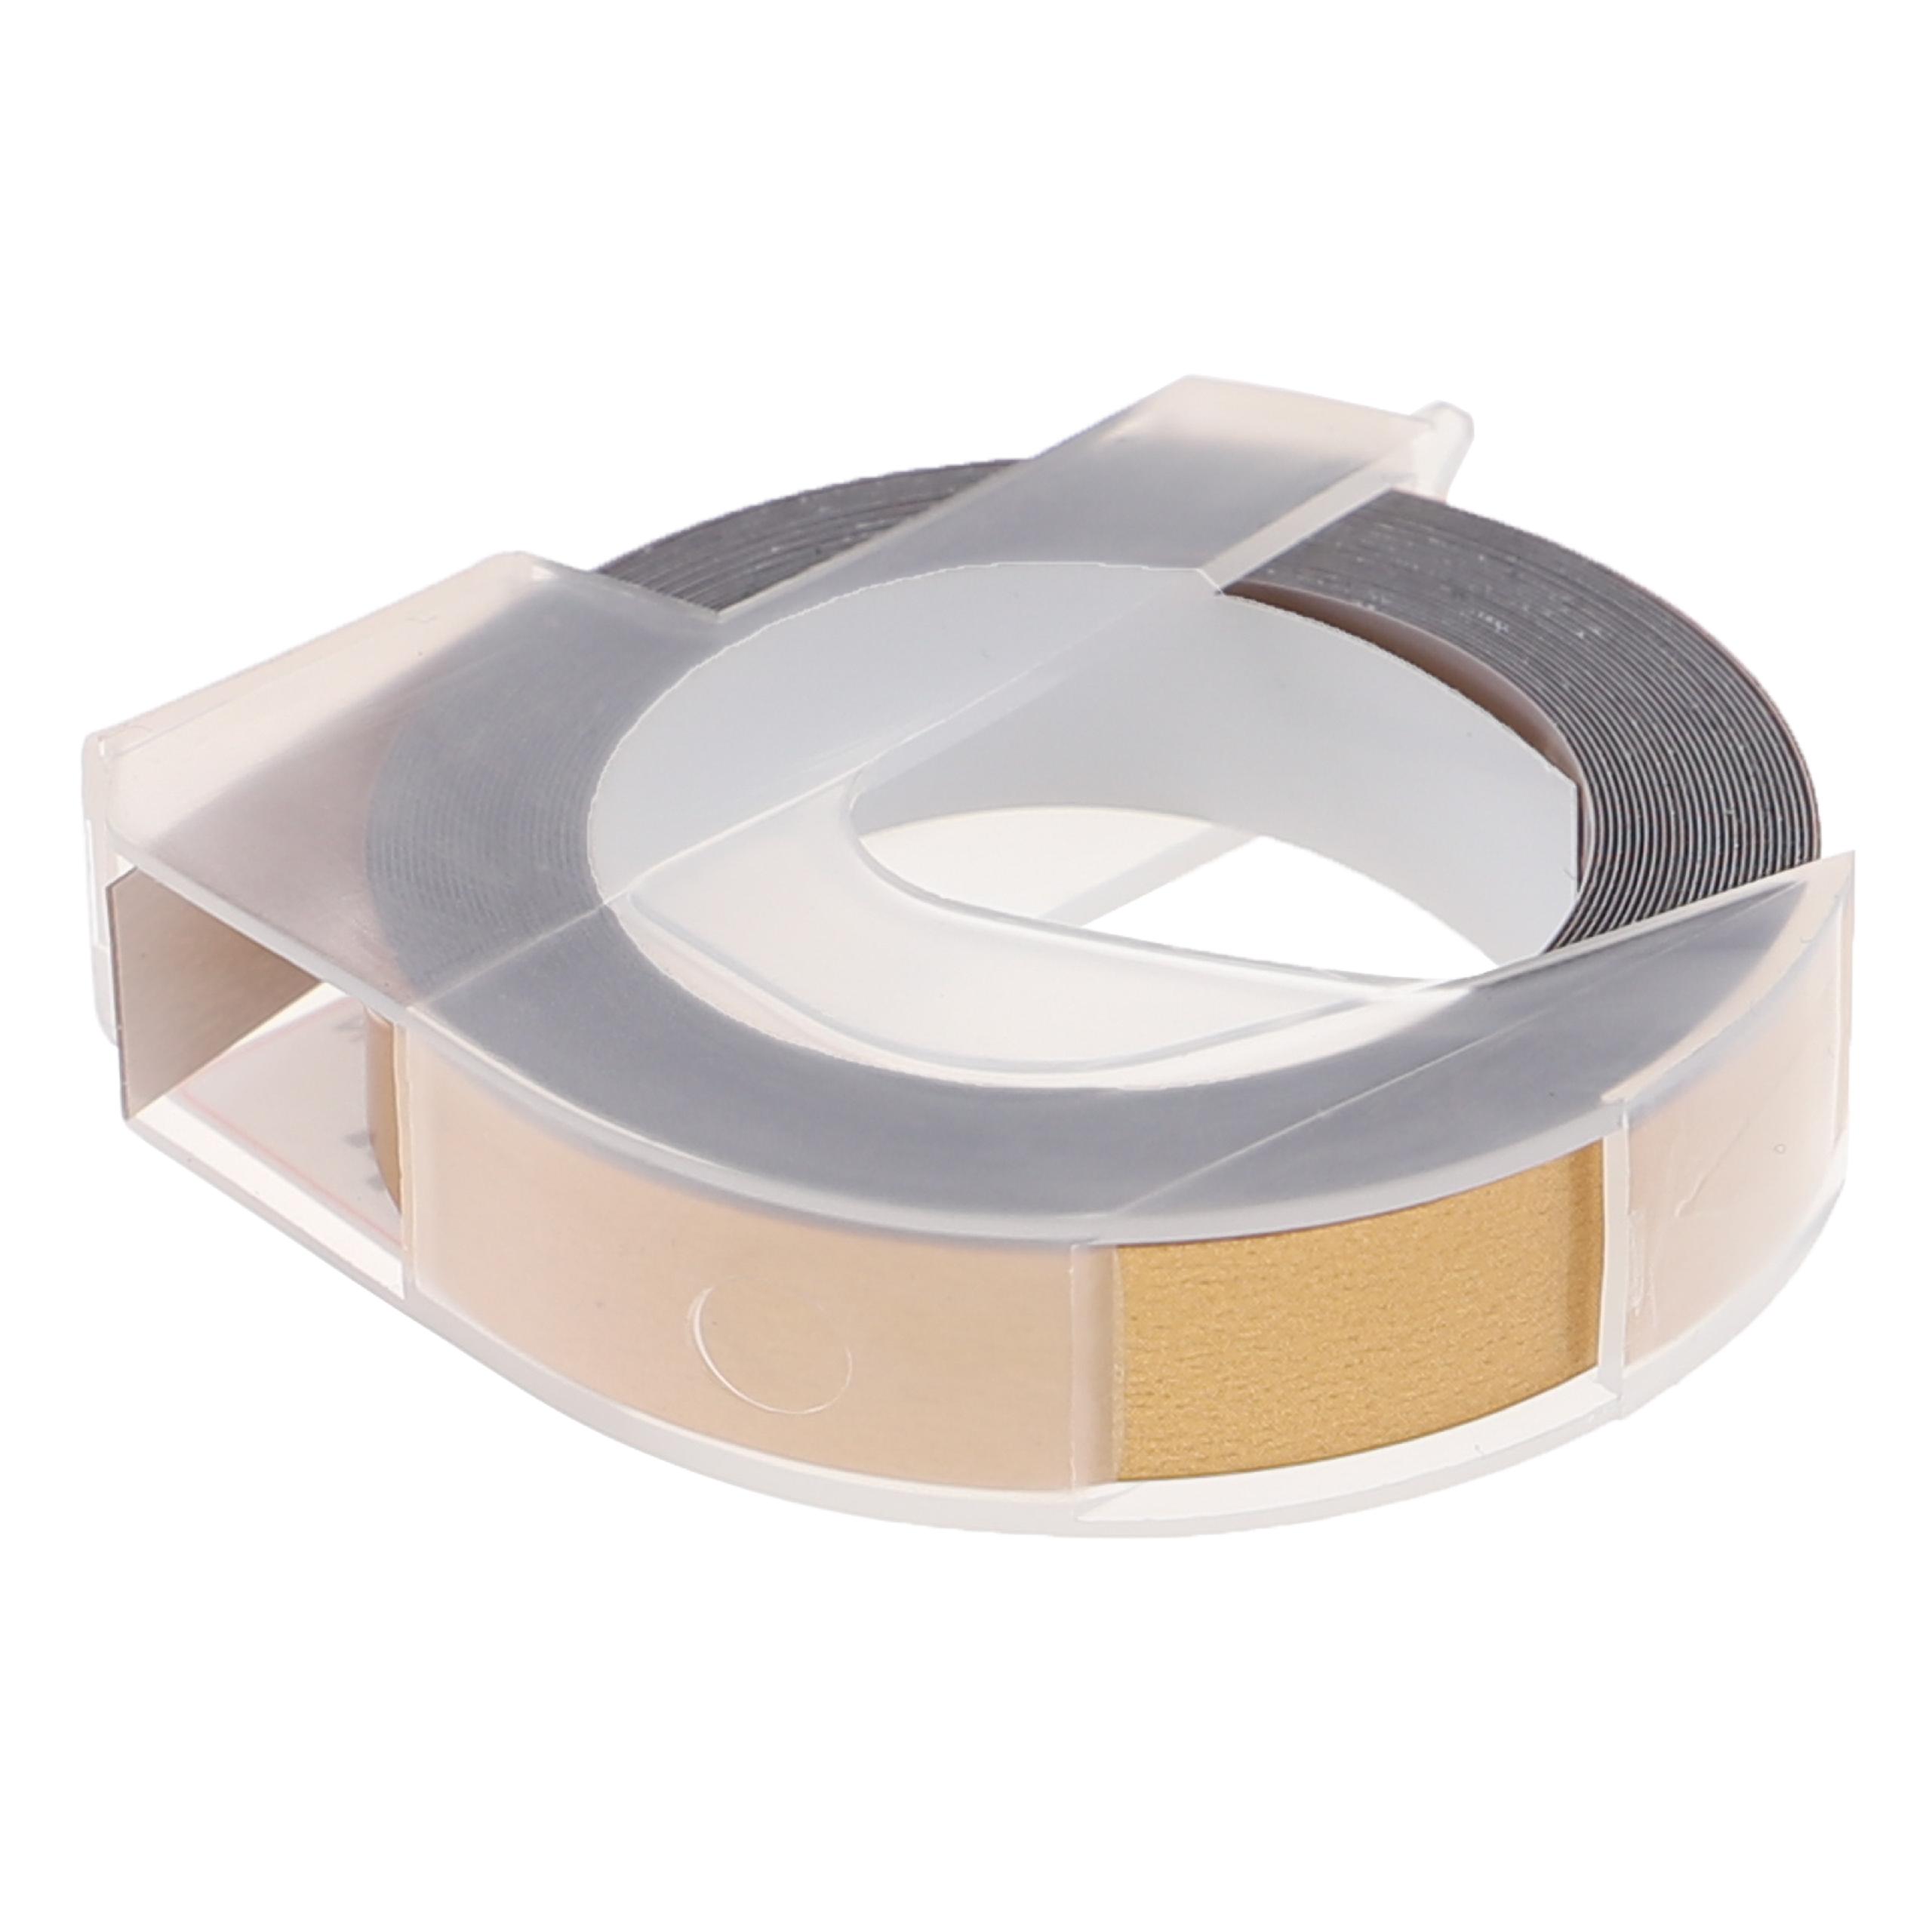 Casete cinta relieve 3D Casete cinta escritura reemplaza Dymo 0898140 Blanco su Oro